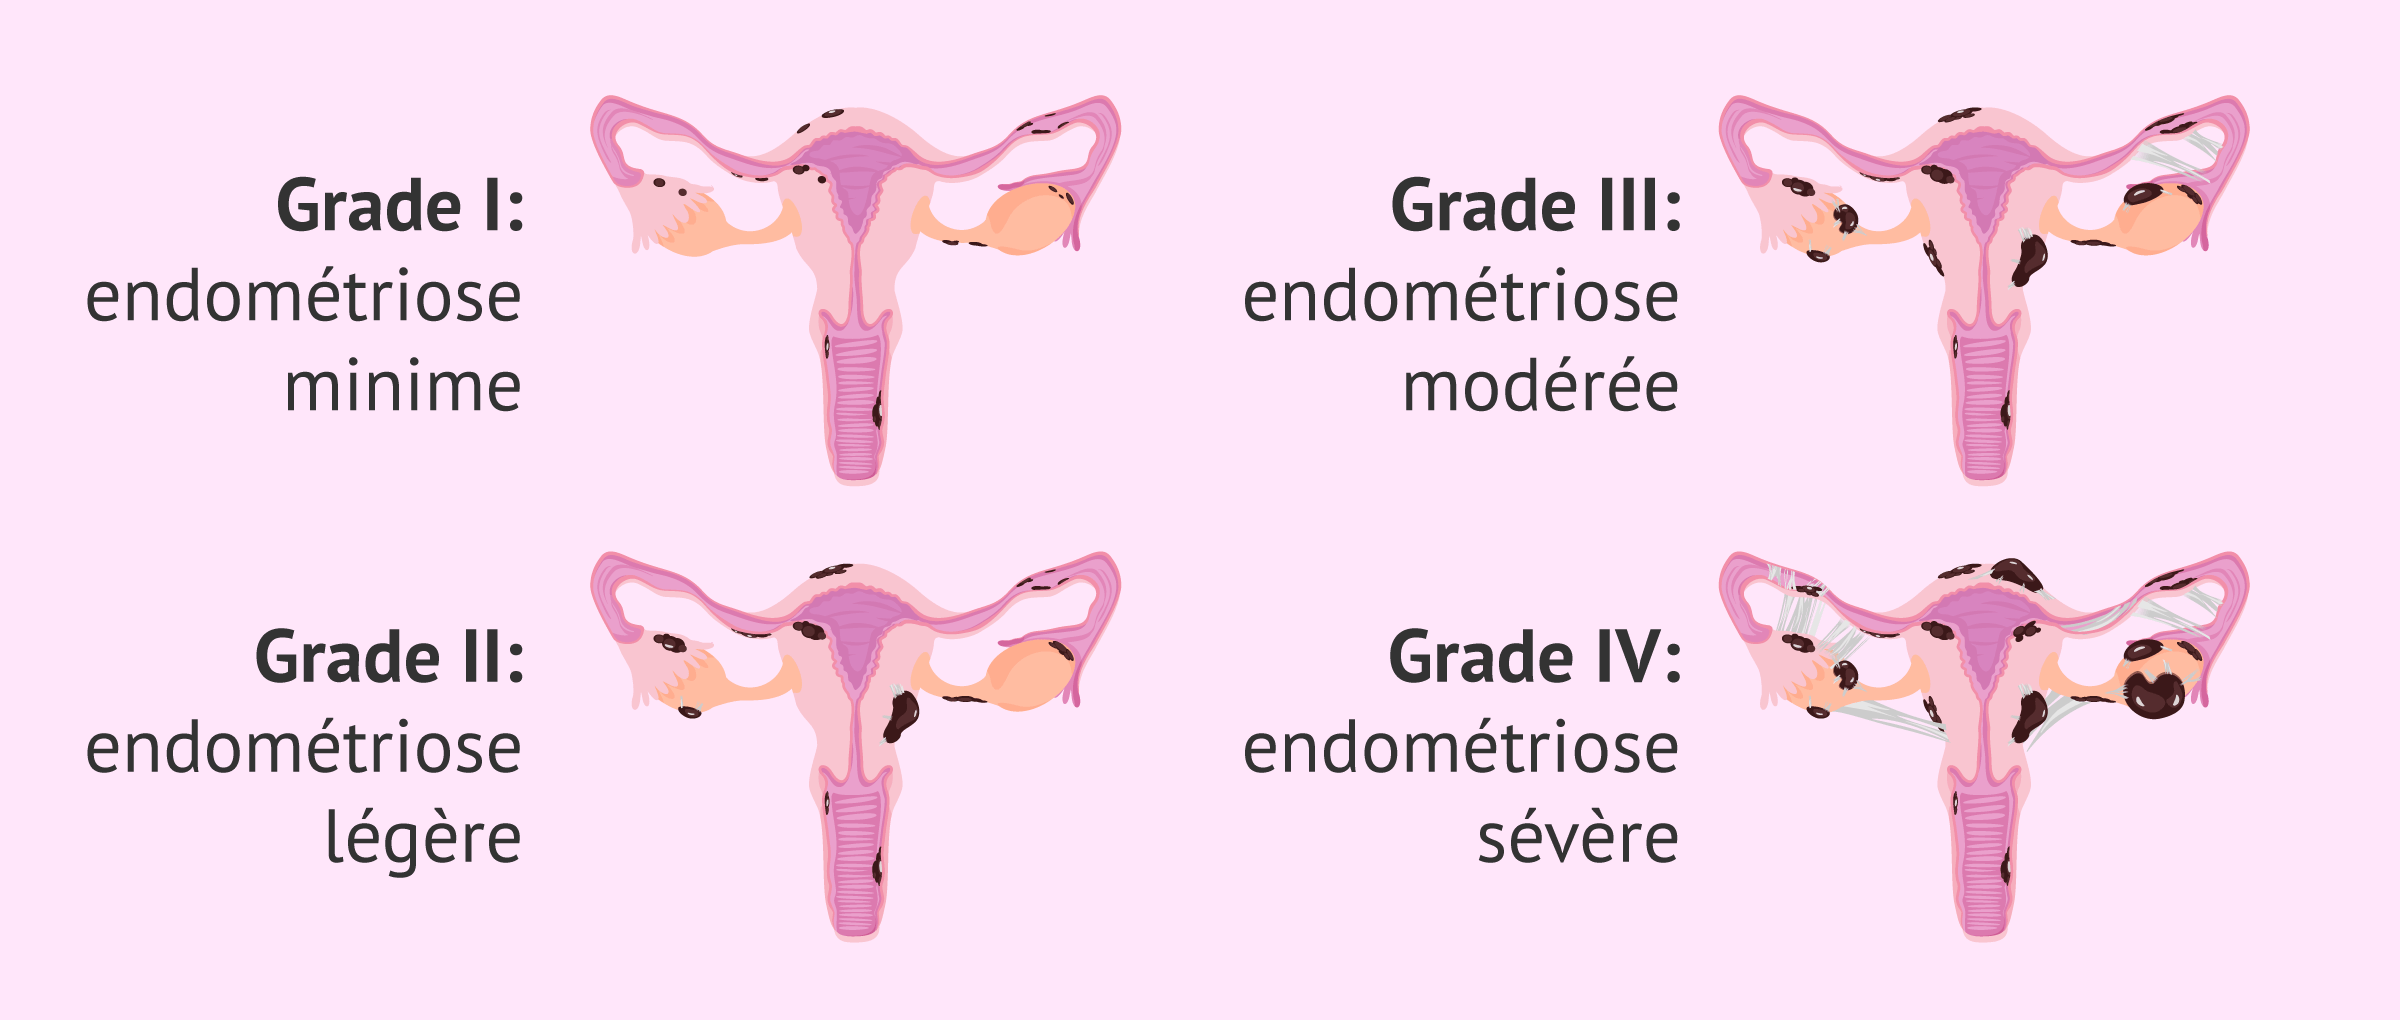 Quels sont les degrés de l'endométriose?